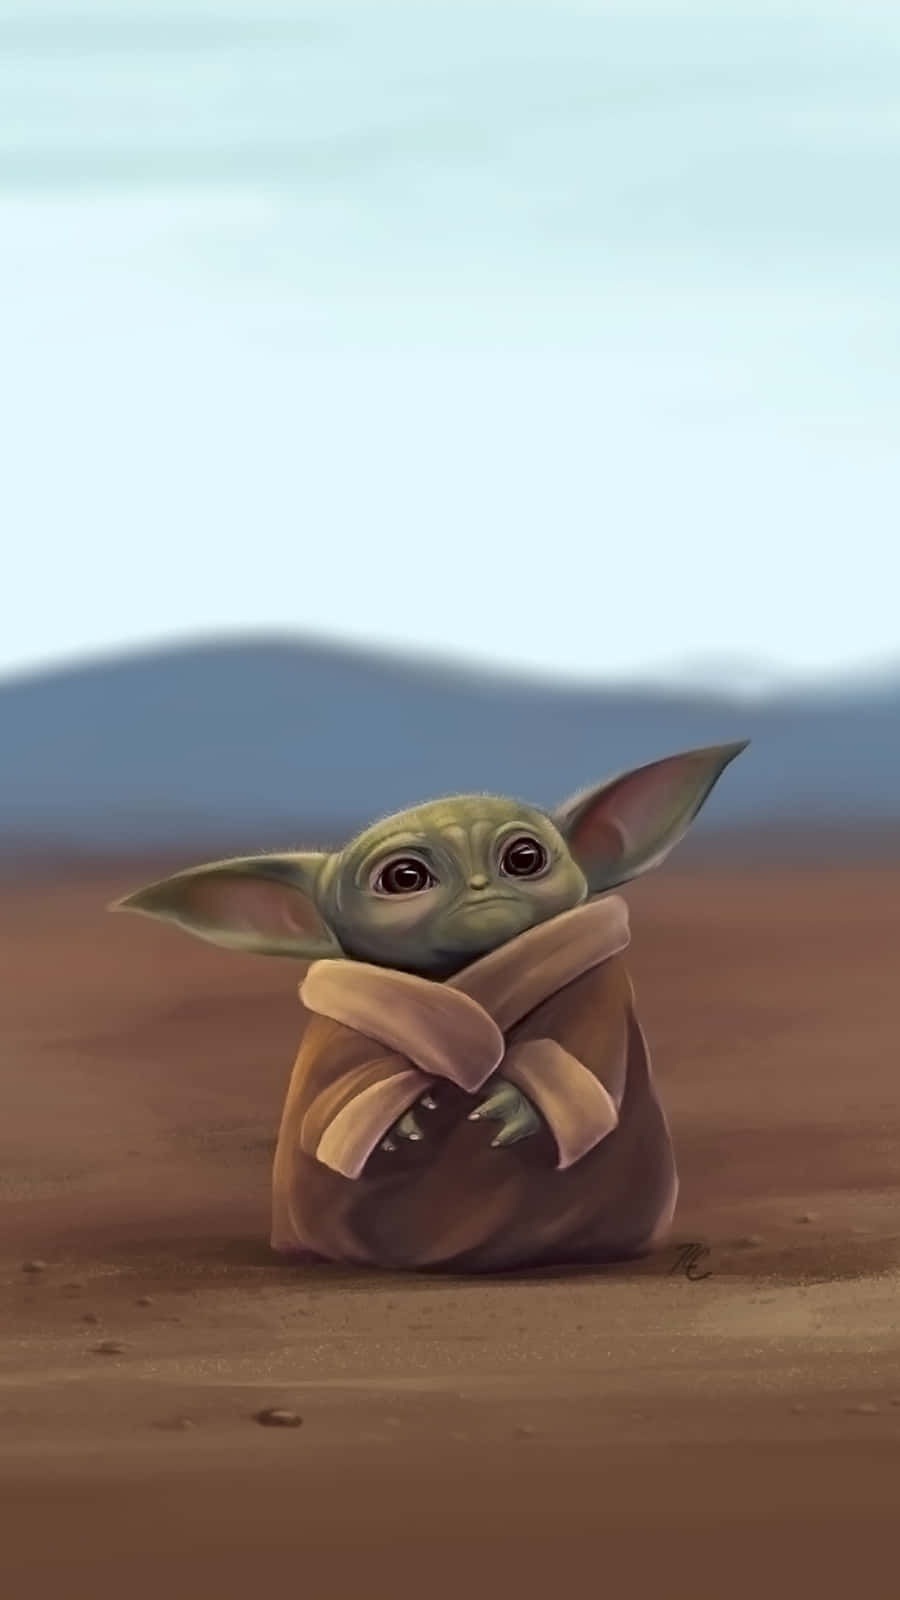 Billede af det lille Baby Yoda, der nyder sig selv med en smart telefon. Wallpaper